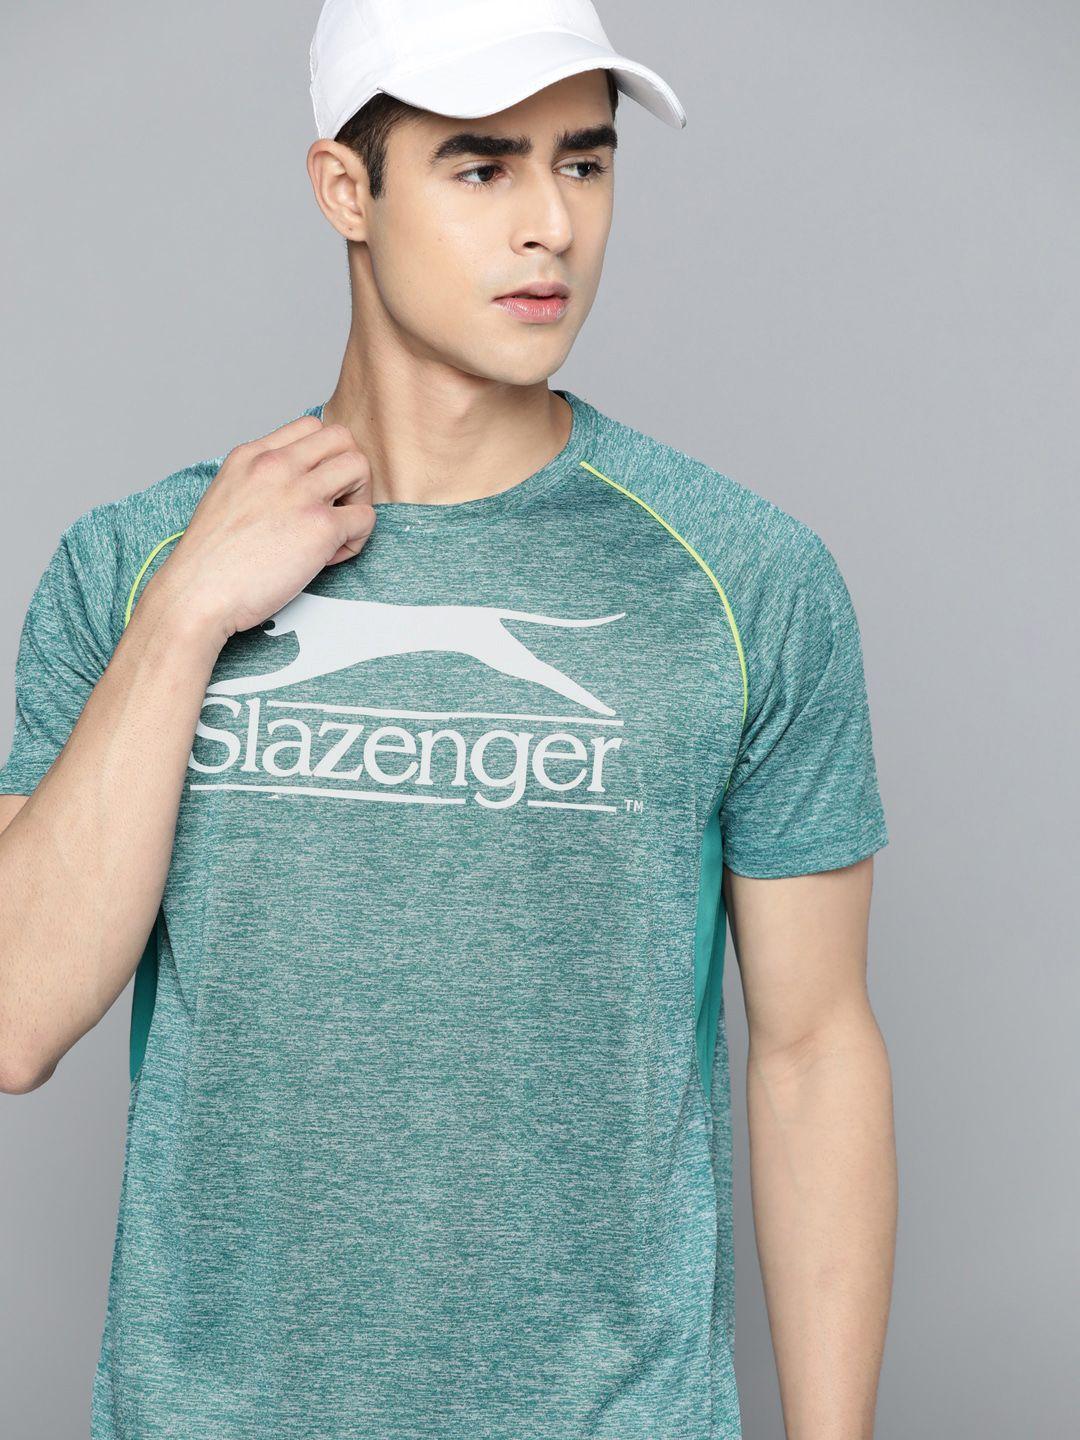 slazenger brand logo printed raglan sleeves running t-shirt